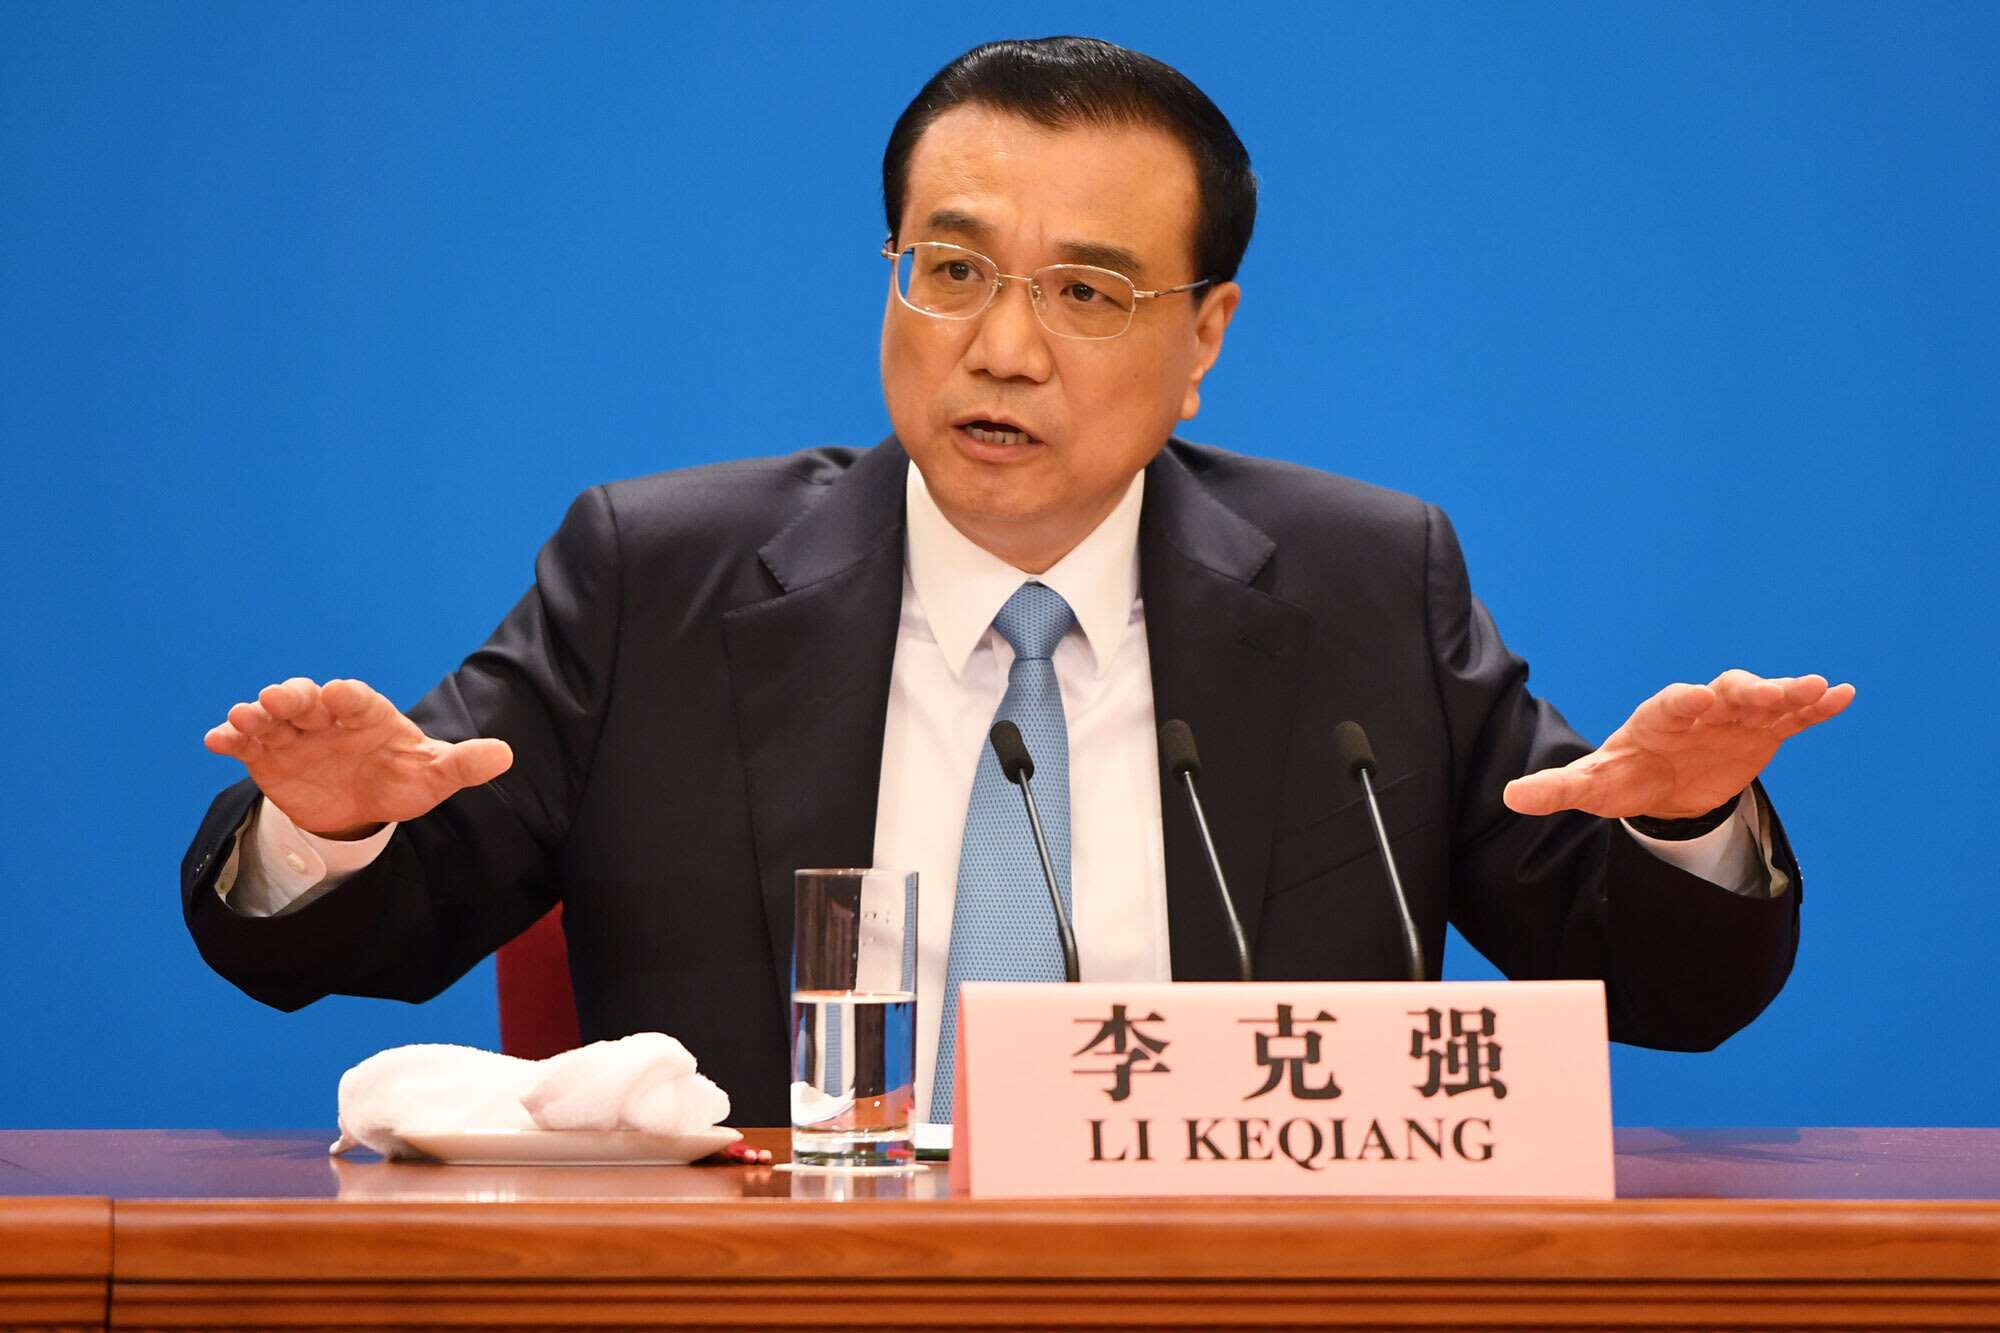 Li Keqiang (Premier ministre chinois) : ‘’L’argent investi au profit de la population pourra générer de nouvelles richesses’’ (conférence de presse)